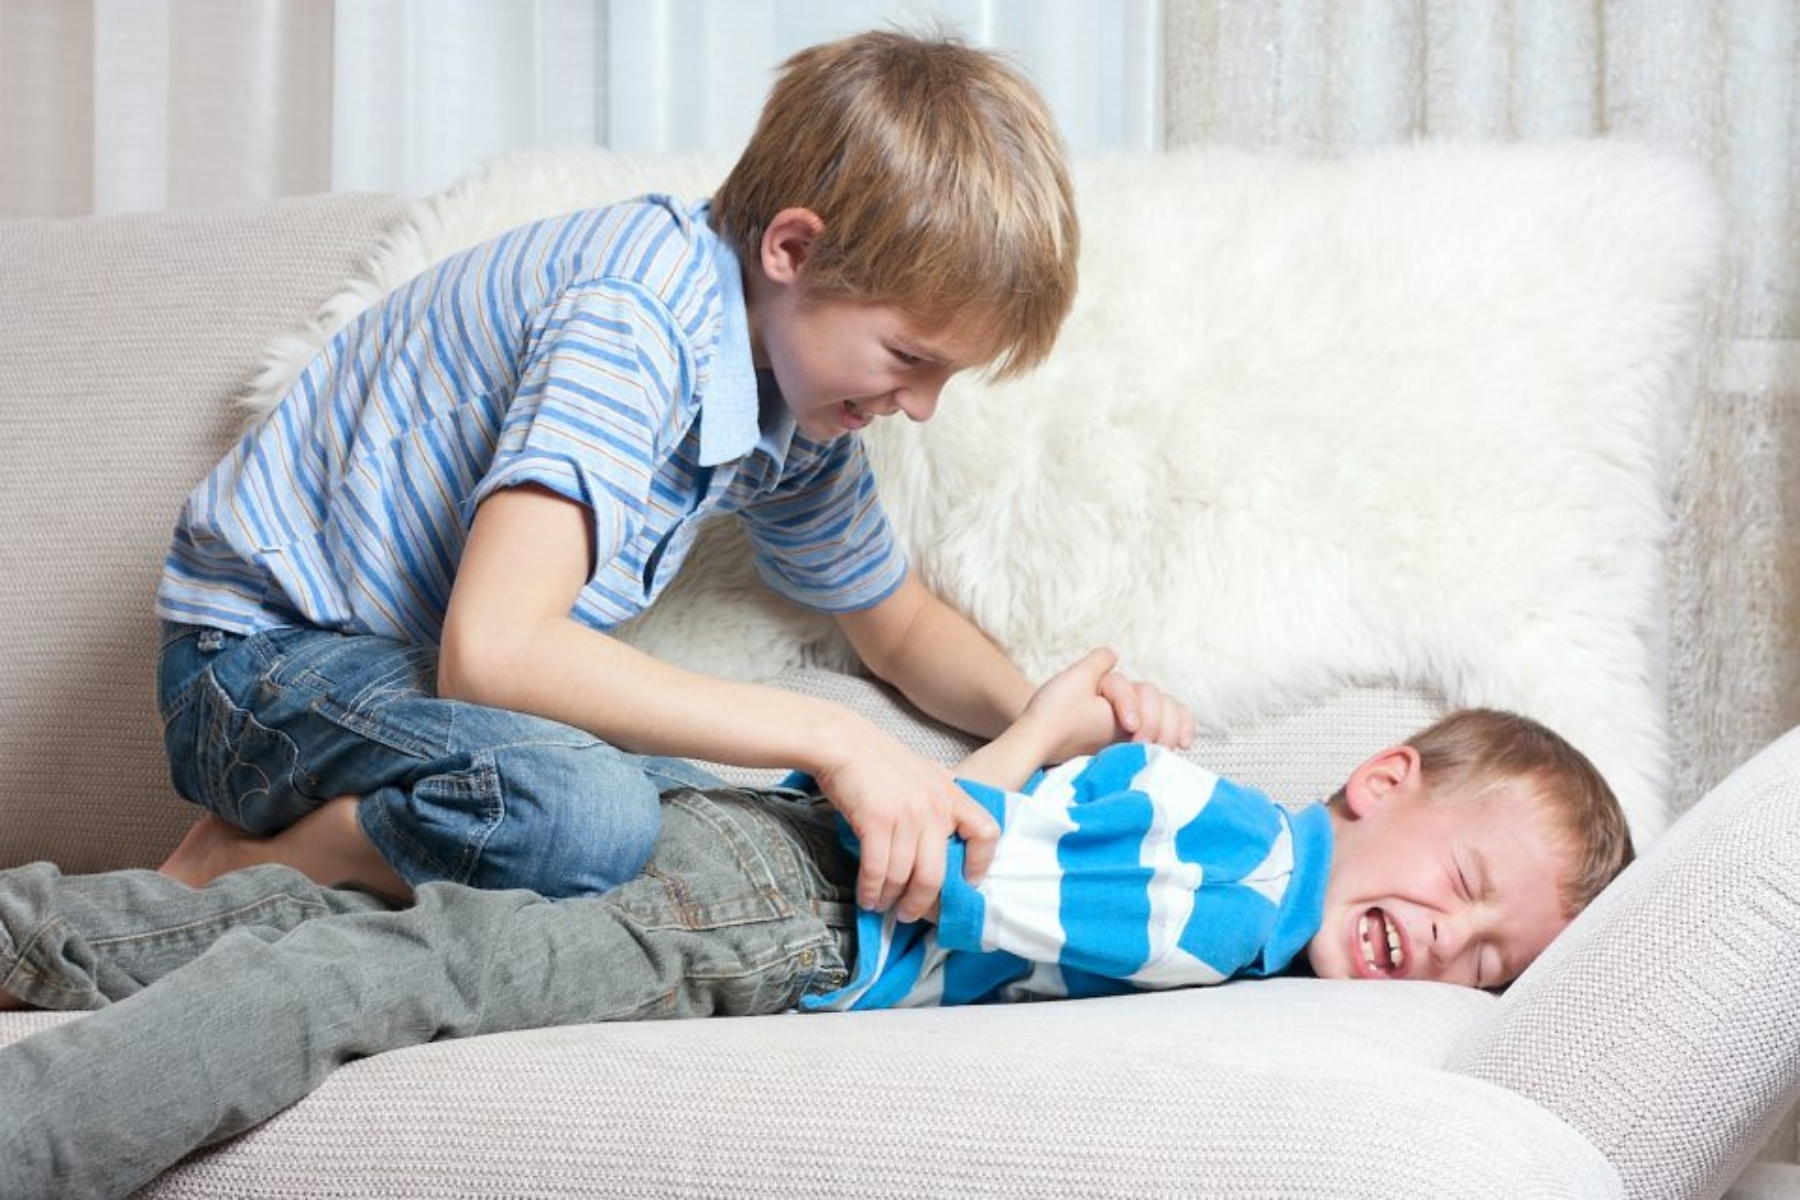 Αδέλφια bullying: Ο εκφοβισμός από τα αδέρφια είναι κακός για την ψυχική ευεξία